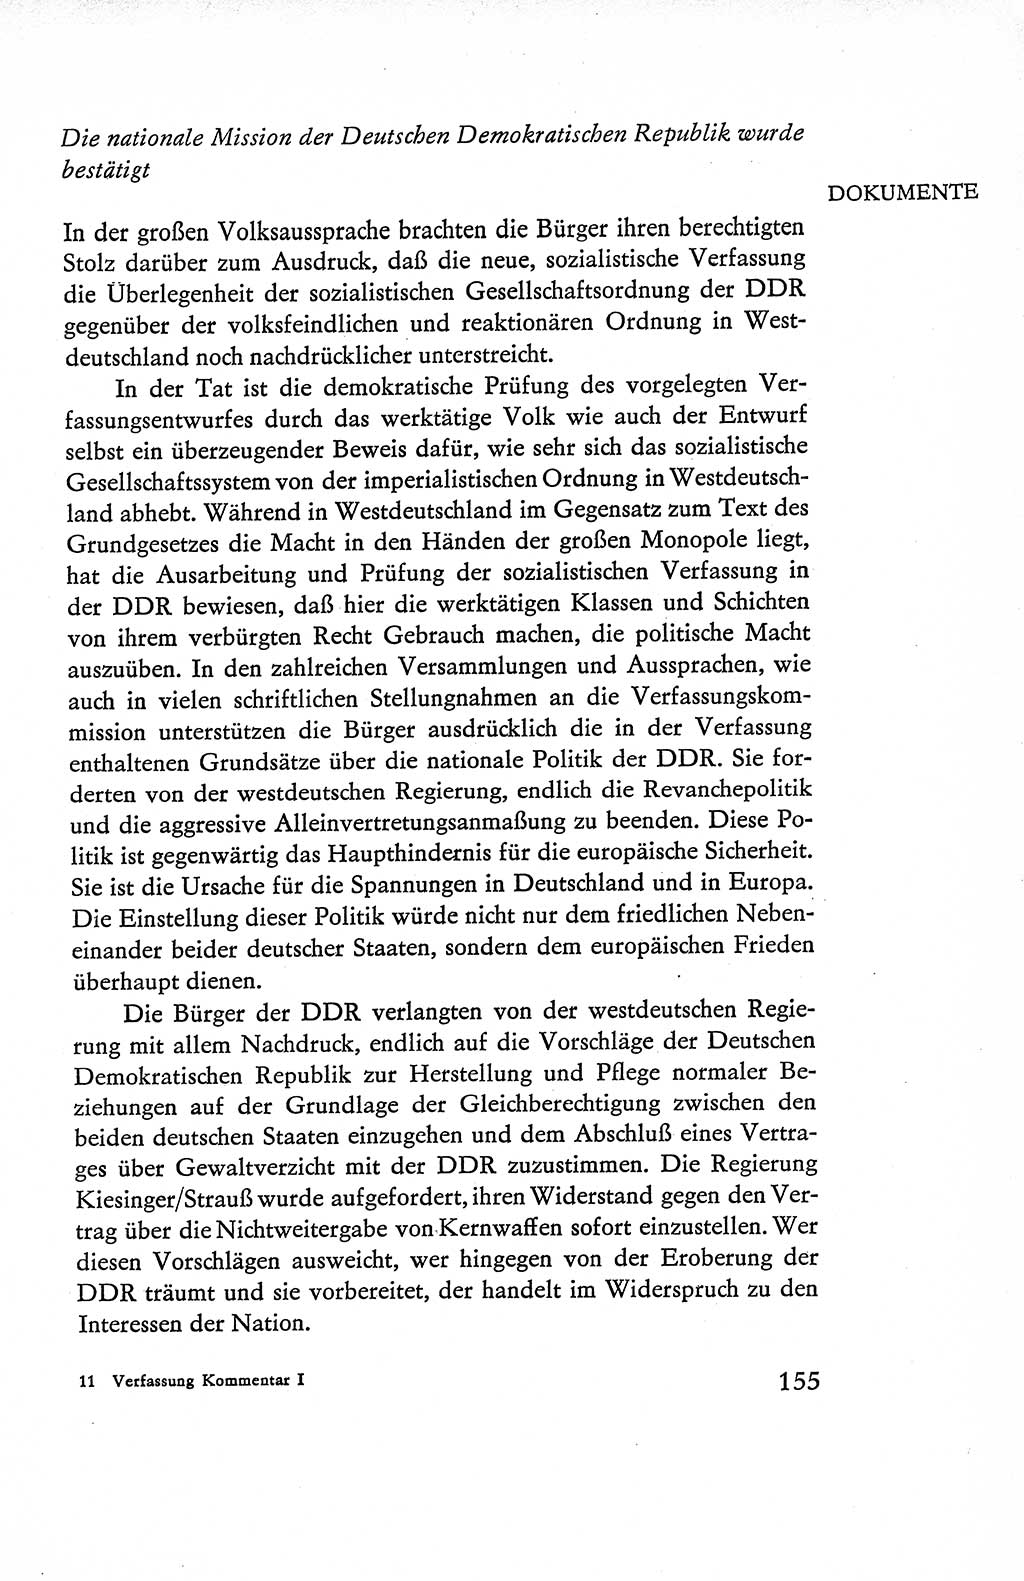 Verfassung der Deutschen Demokratischen Republik (DDR), Dokumente, Kommentar 1969, Band 1, Seite 155 (Verf. DDR Dok. Komm. 1969, Bd. 1, S. 155)